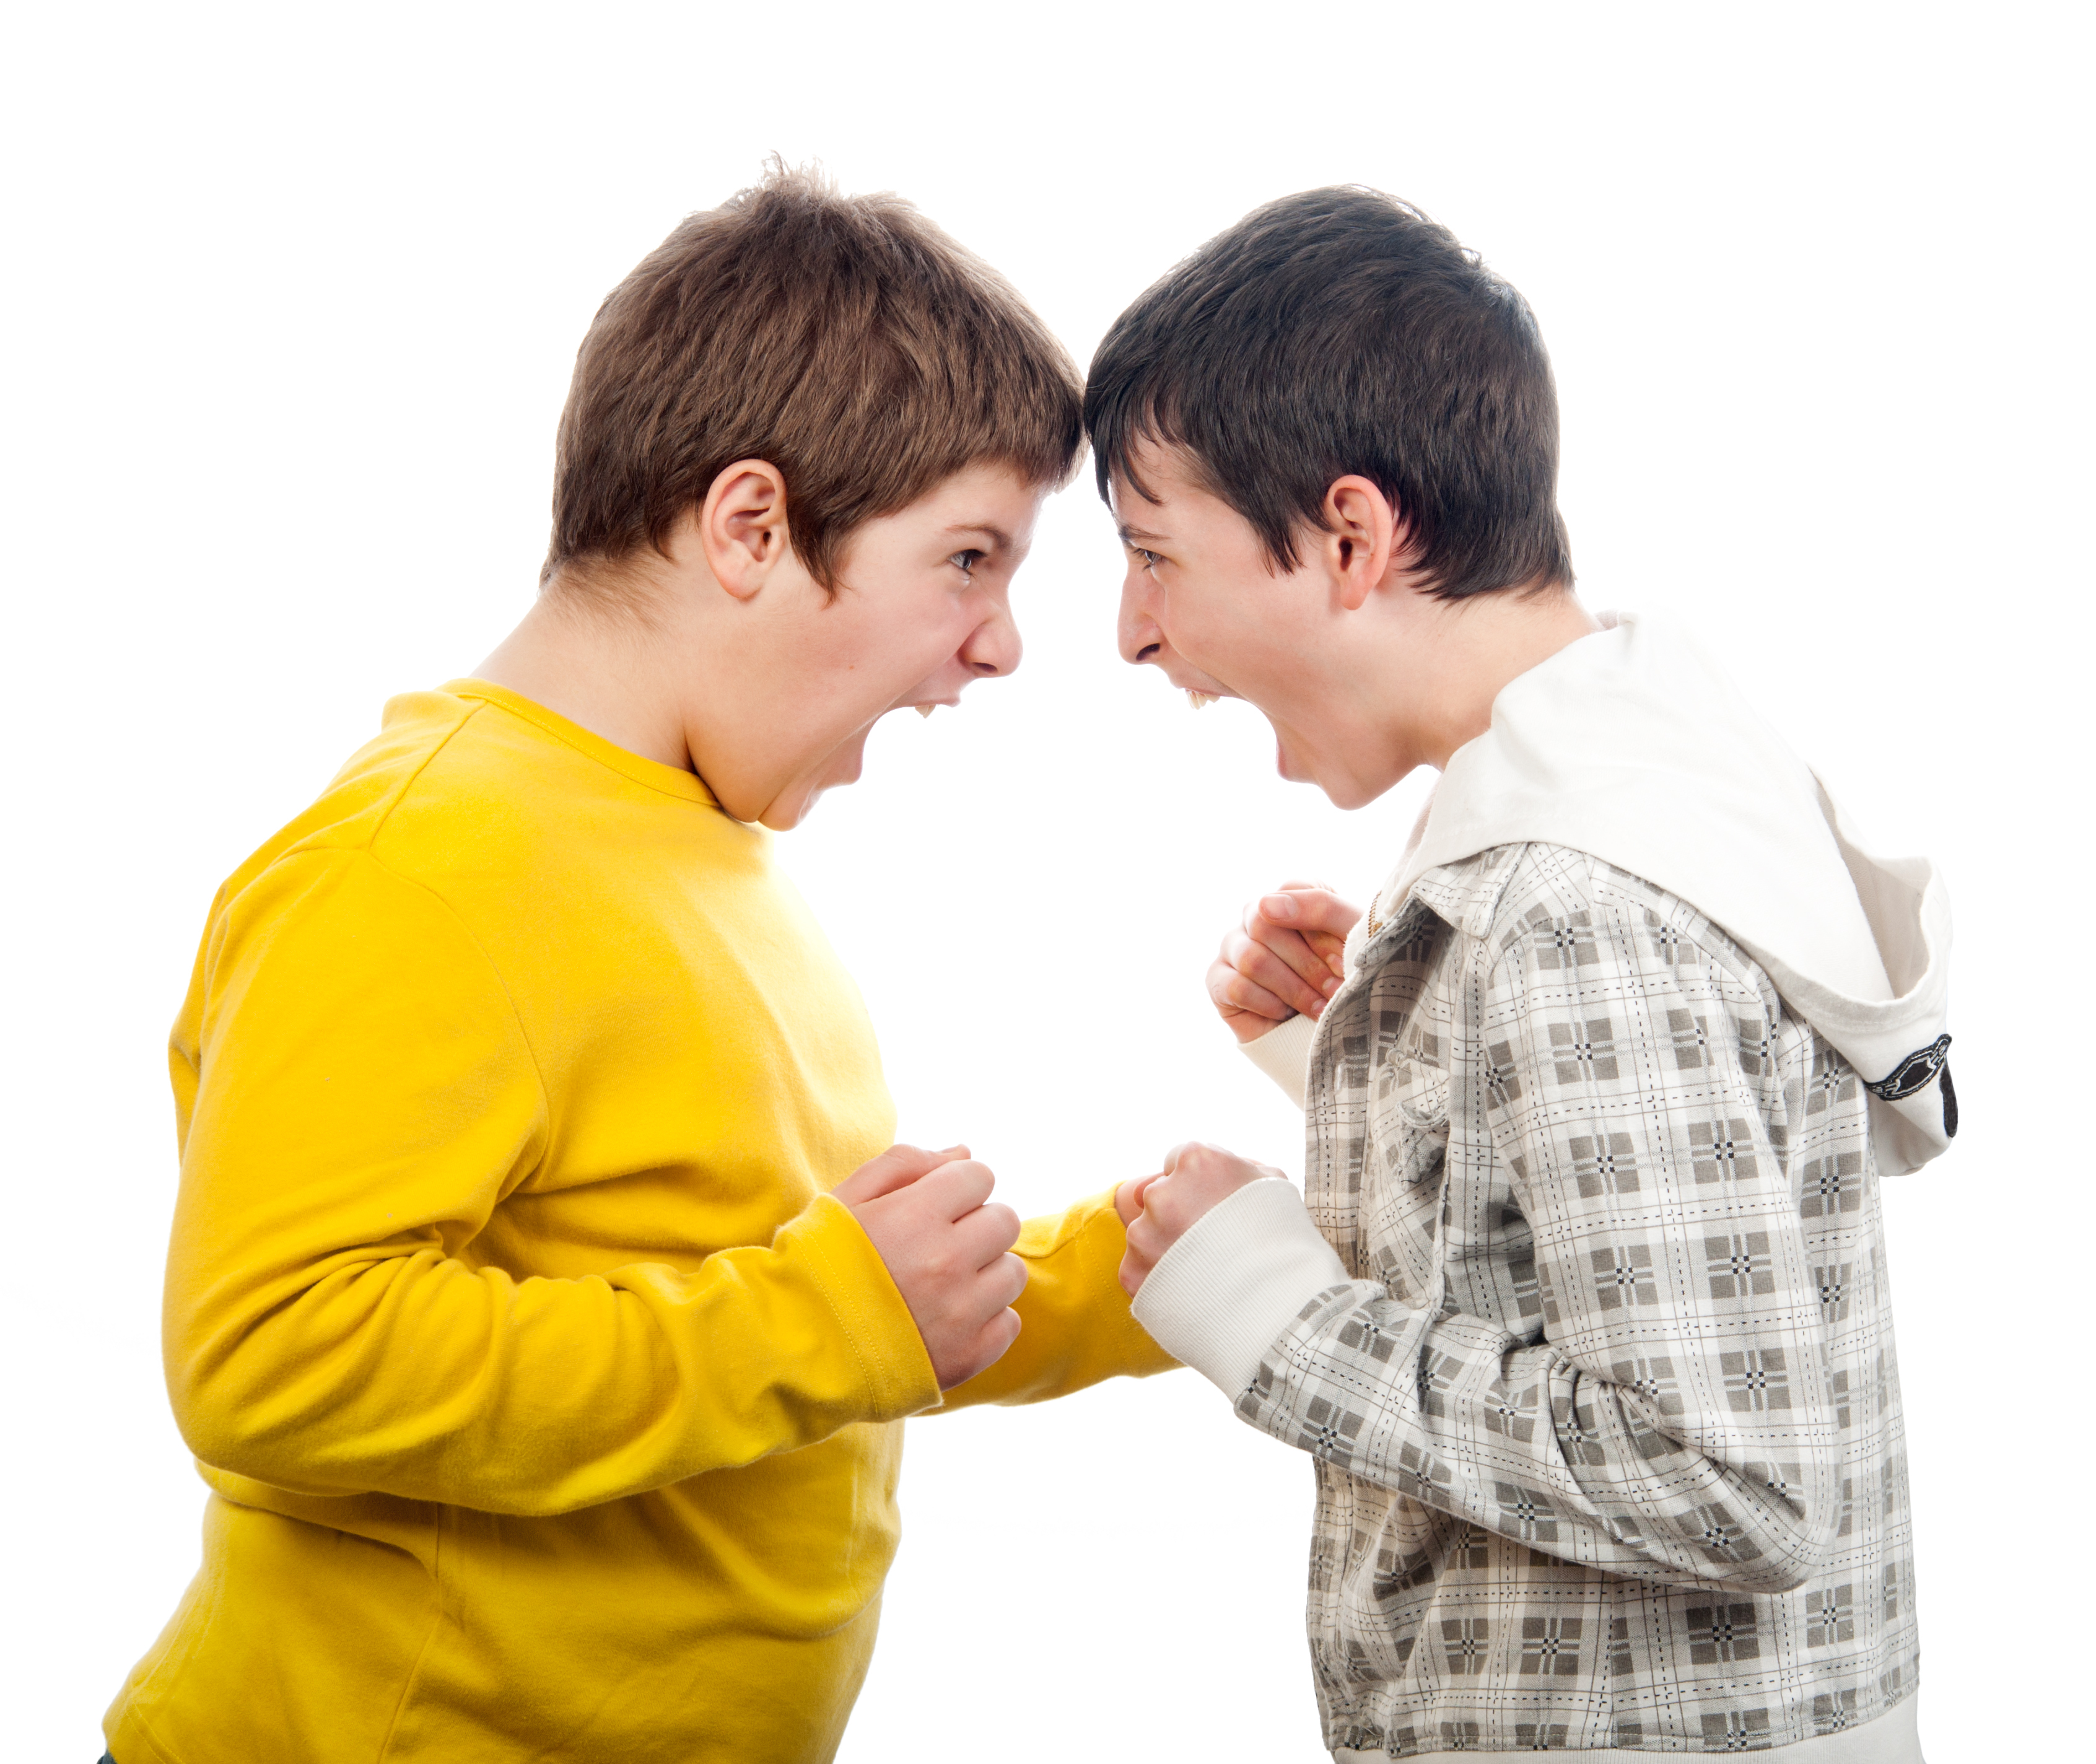 Jungen, die sich gegenseitig anschreien | Quelle: Shutterstock